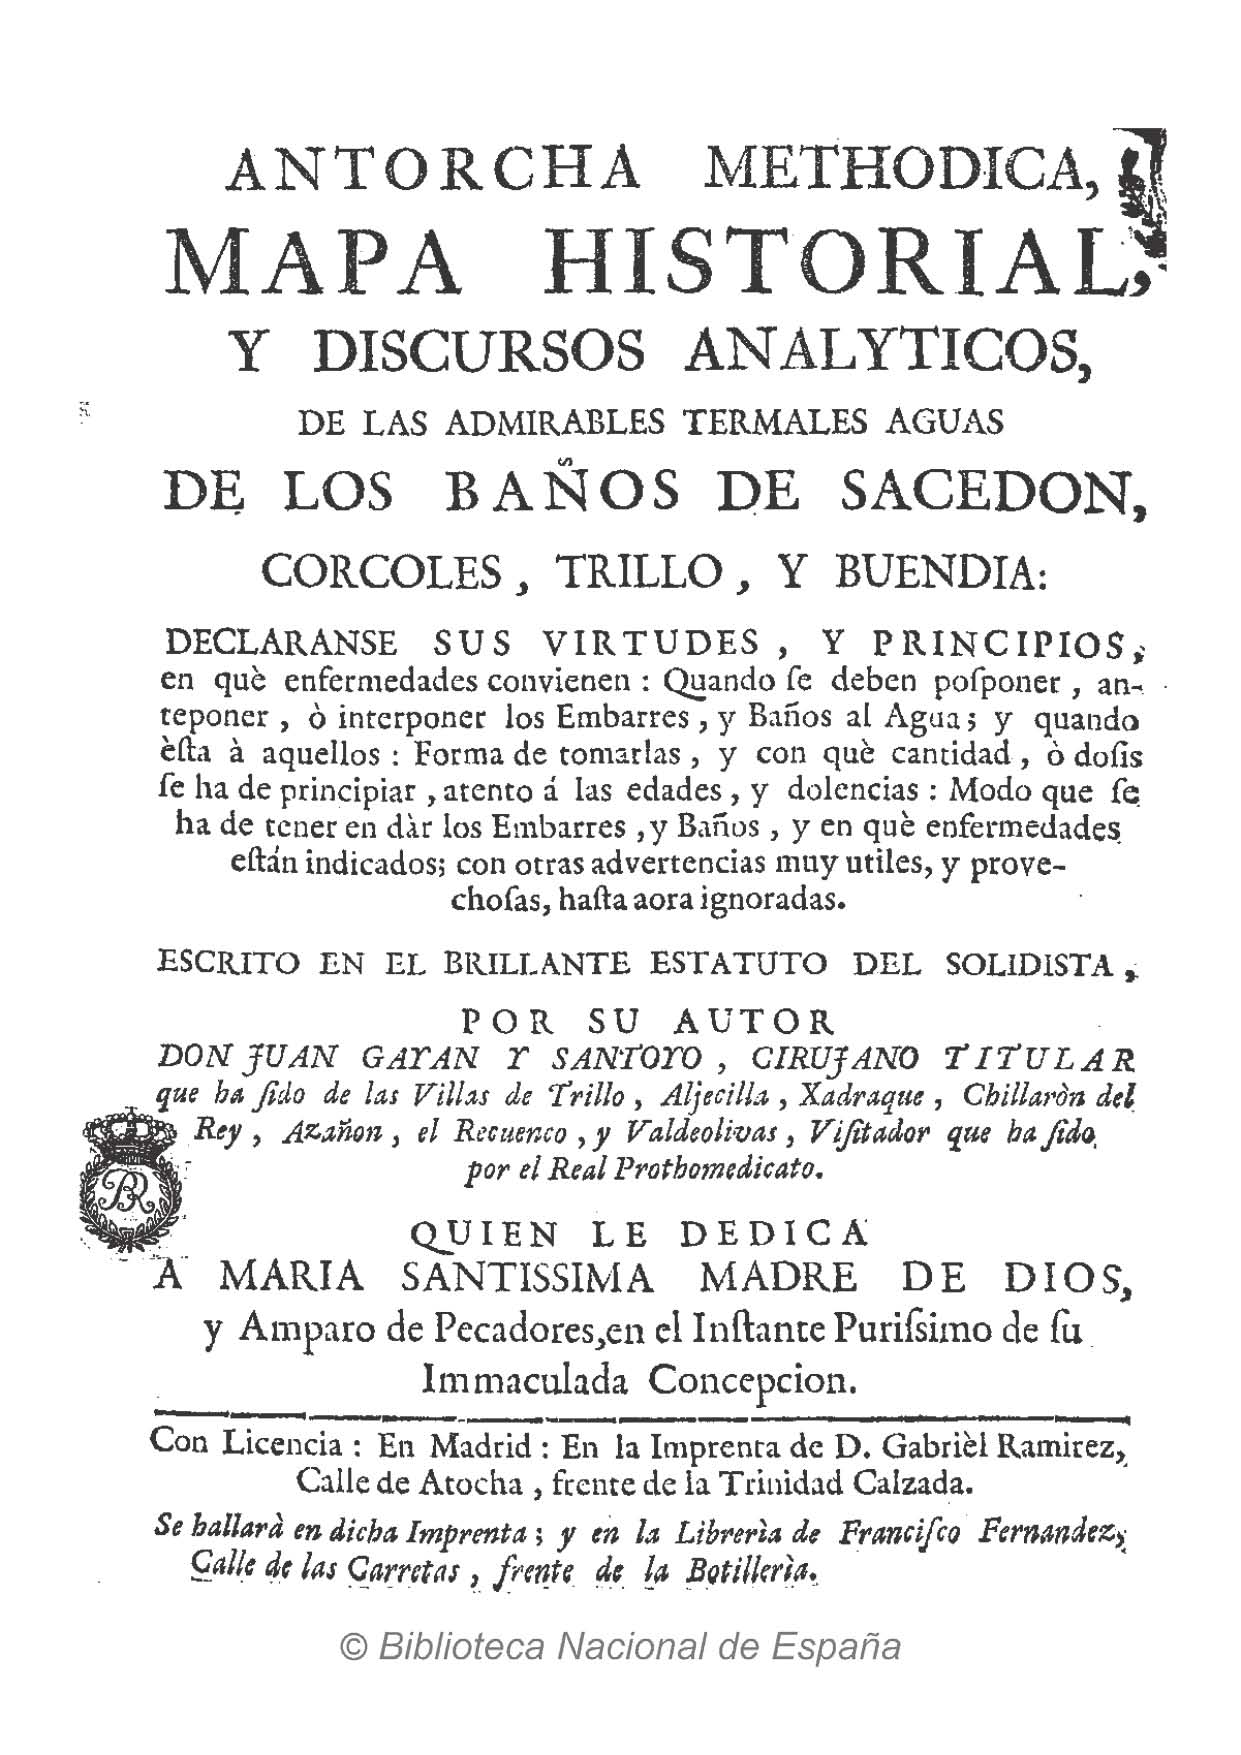 Portada del libro "Historia universal de las fuentes minerales de España" (1765)